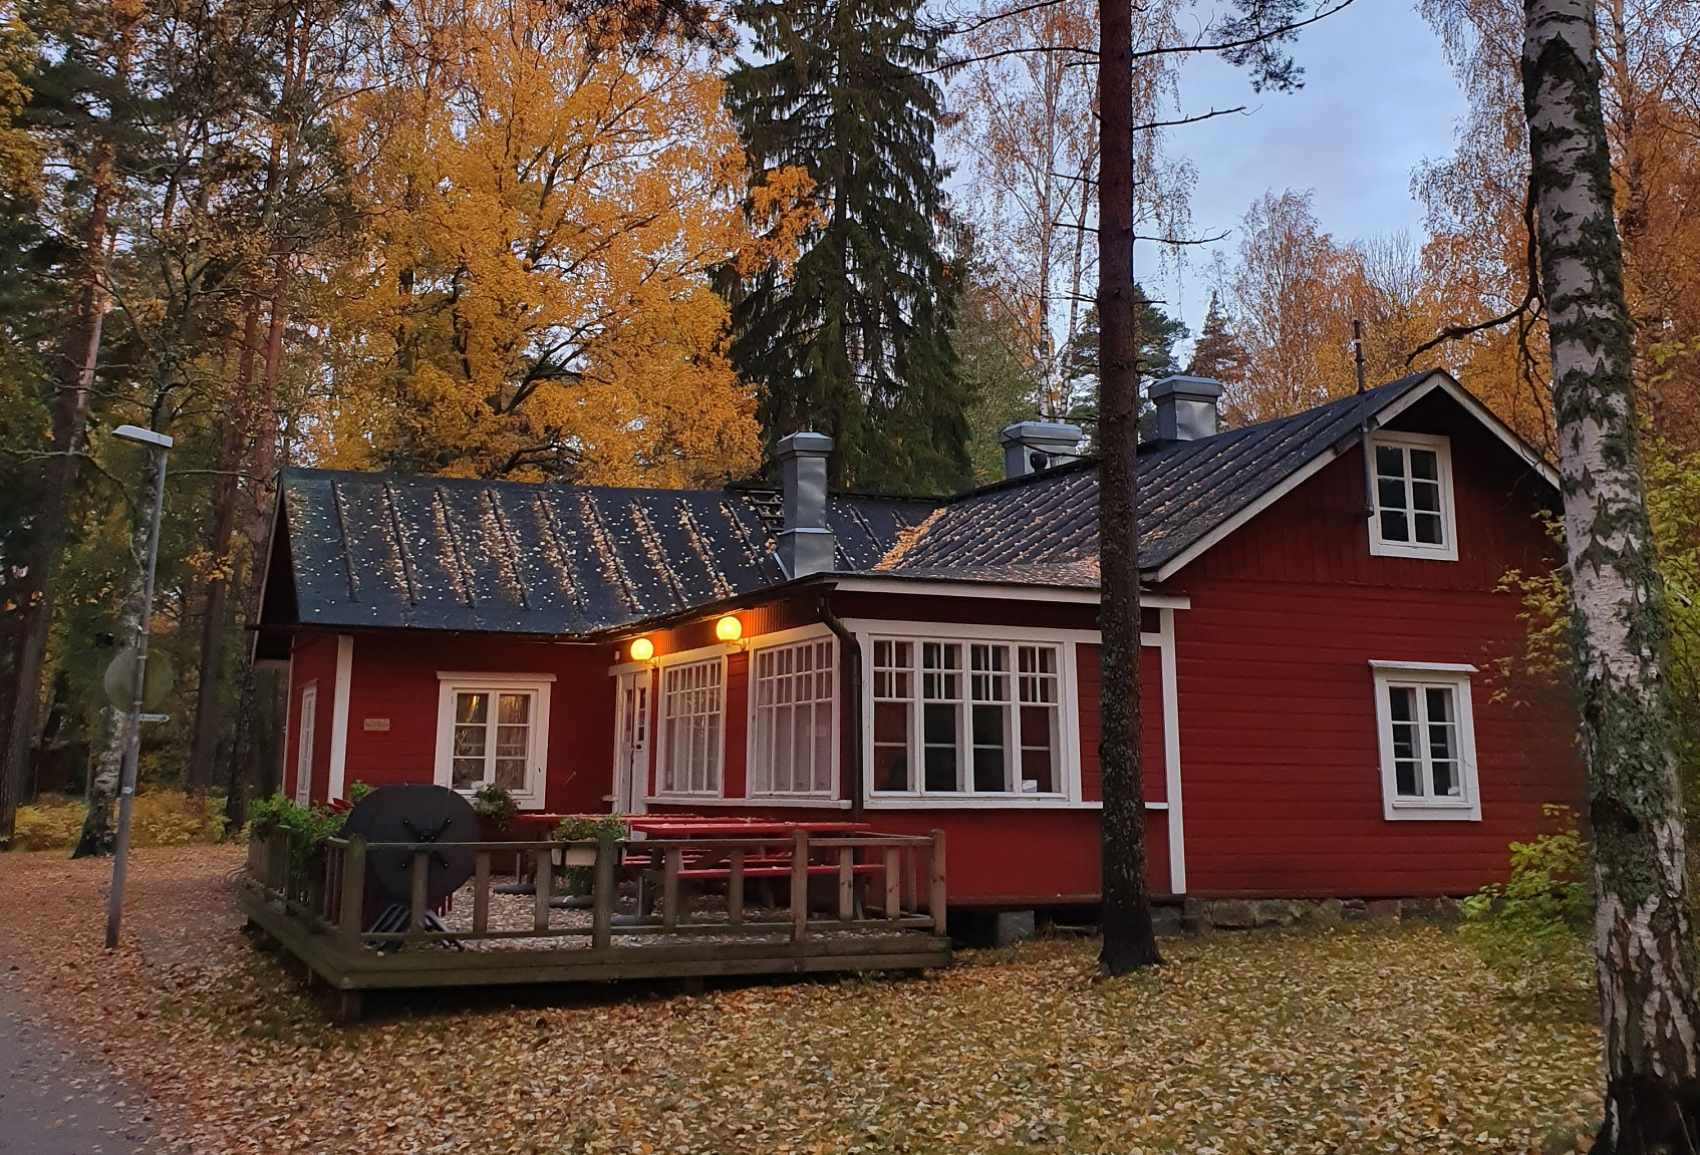 À Helsinki, les maisons de quartier tranchent avec les zones résidentielles peu favorisées aux abords desquelles elles sont implantées. © Sirpa Tamminen